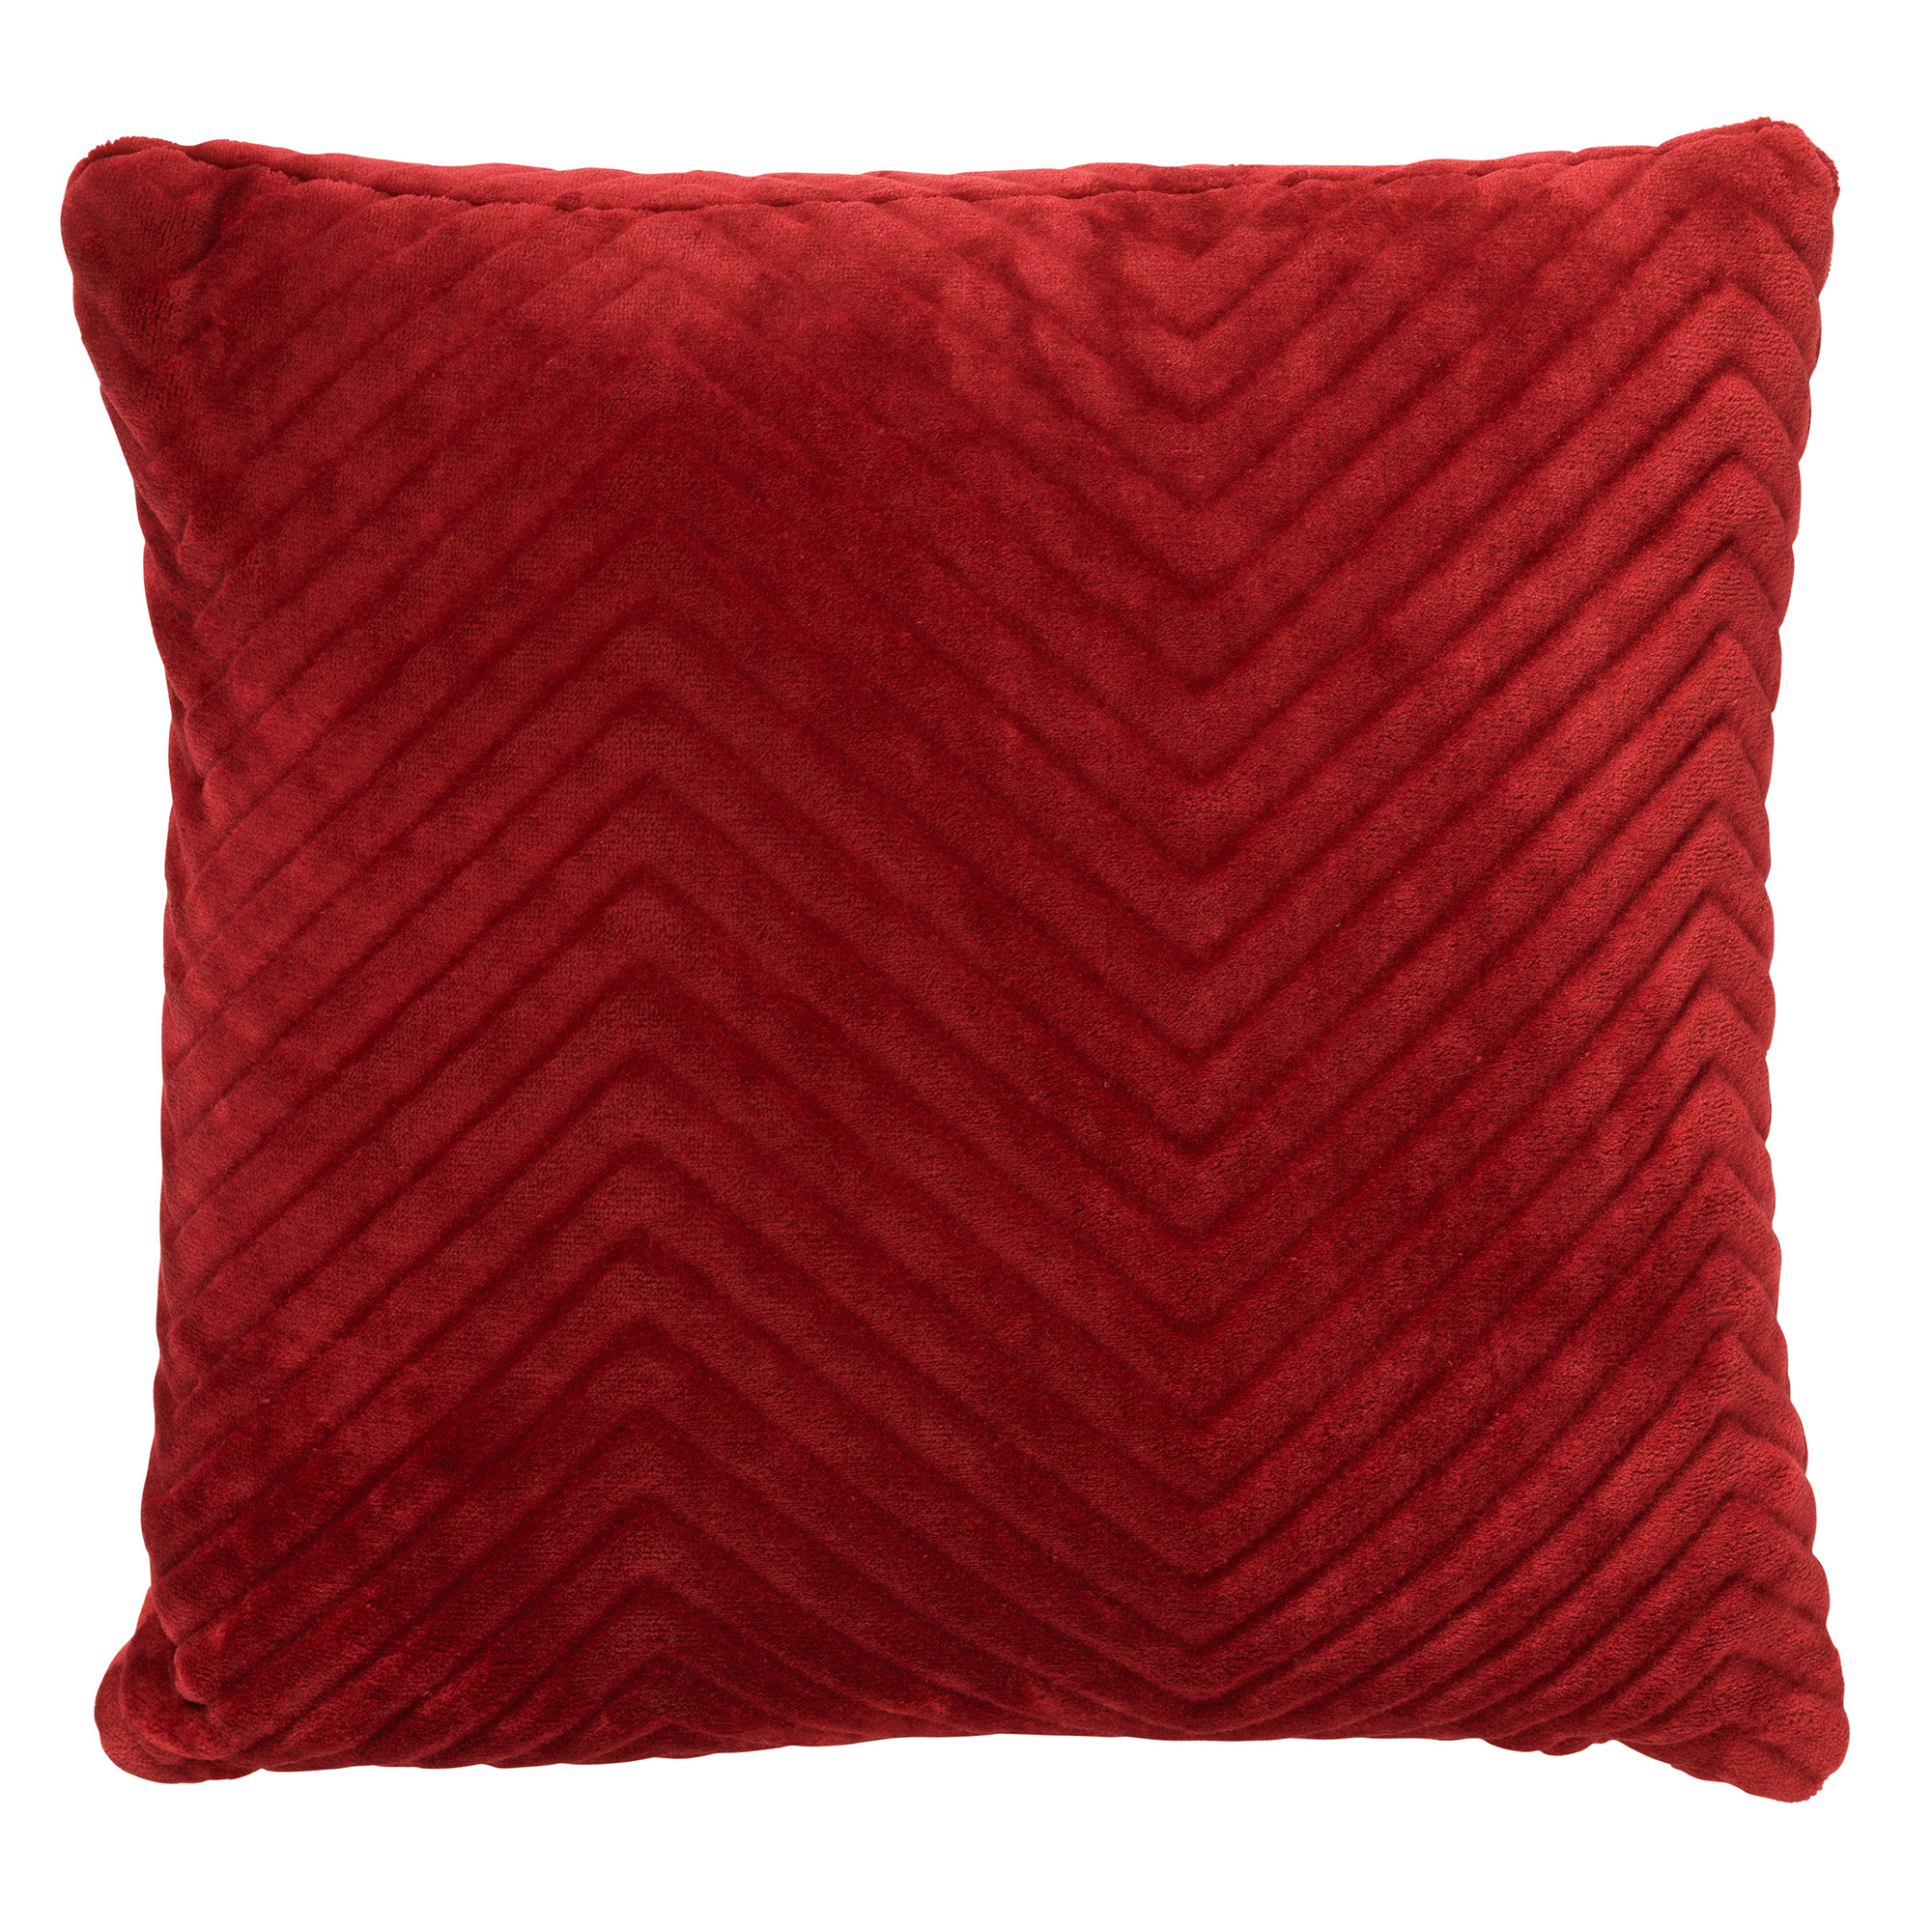 ZICO - Kussenhoes zigzag 45x45 cm Merlot - rood - superzacht